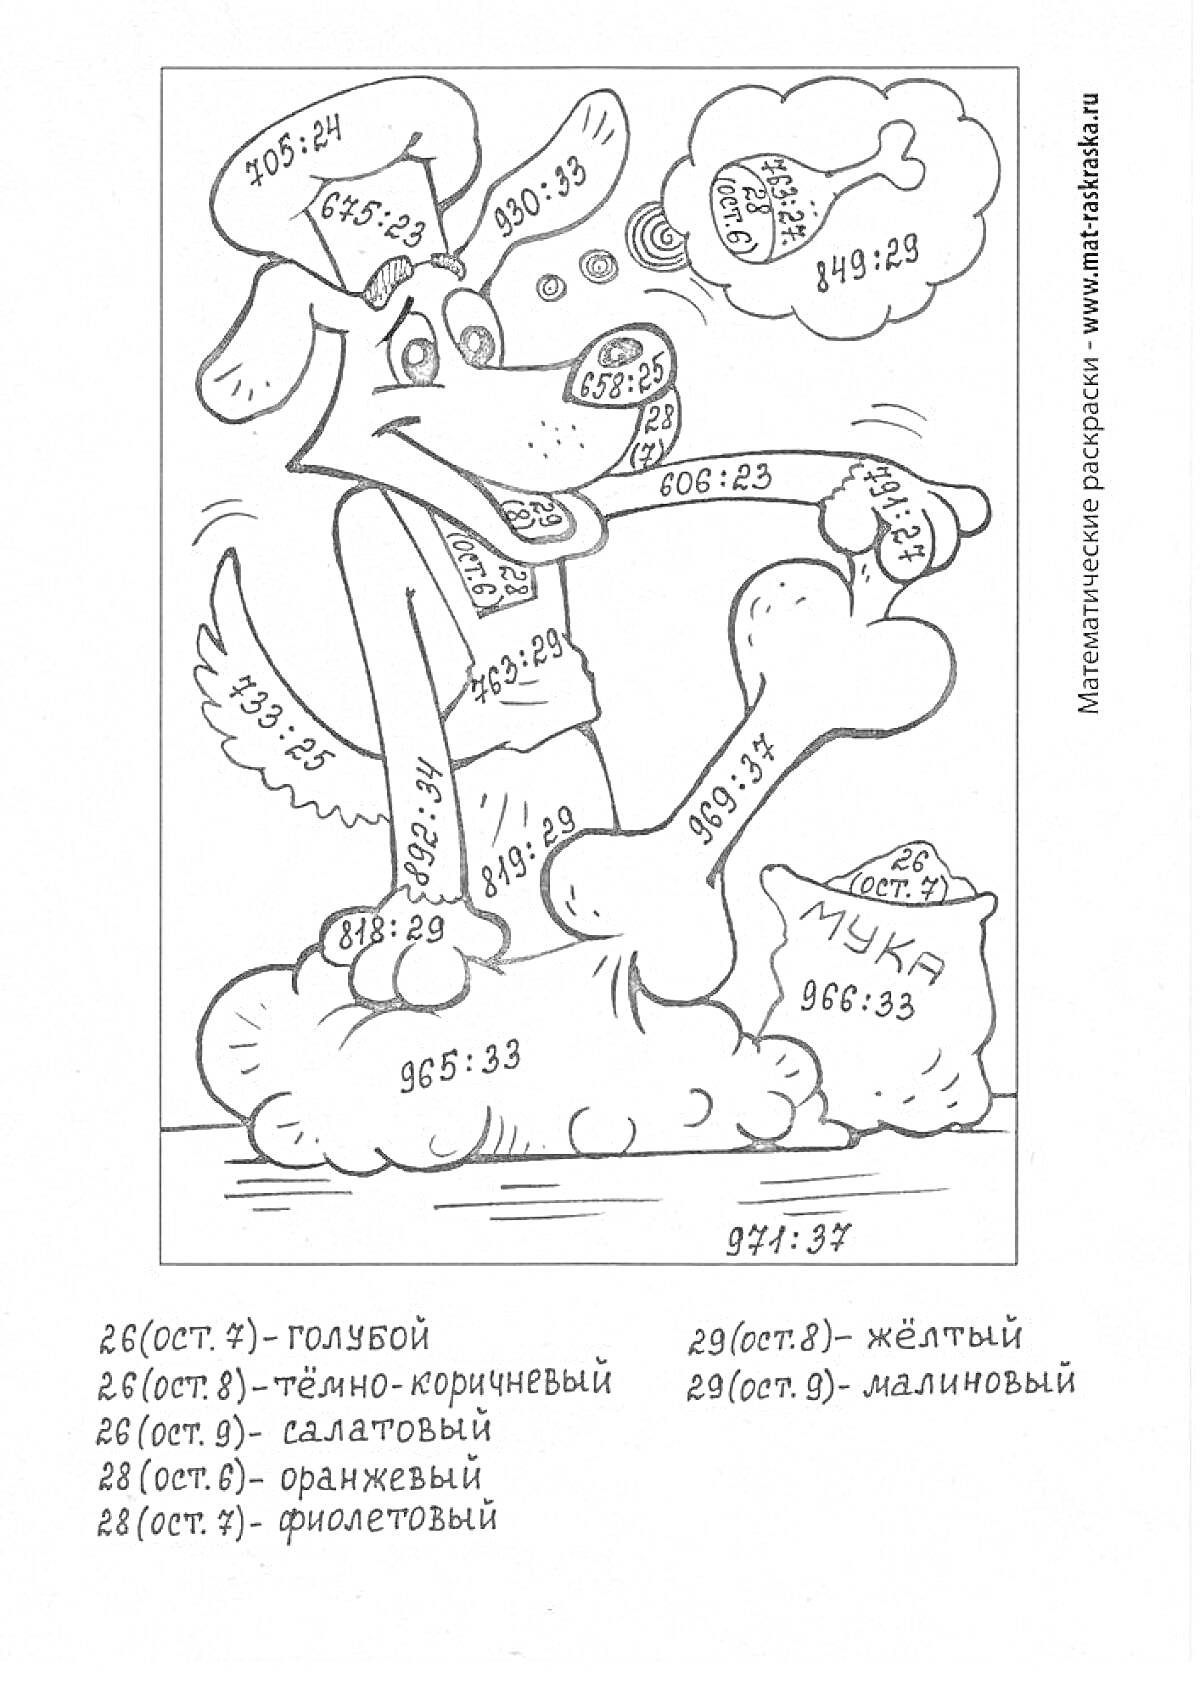 Собака с косточкой, мешок с мукой и облако с математическими примерами